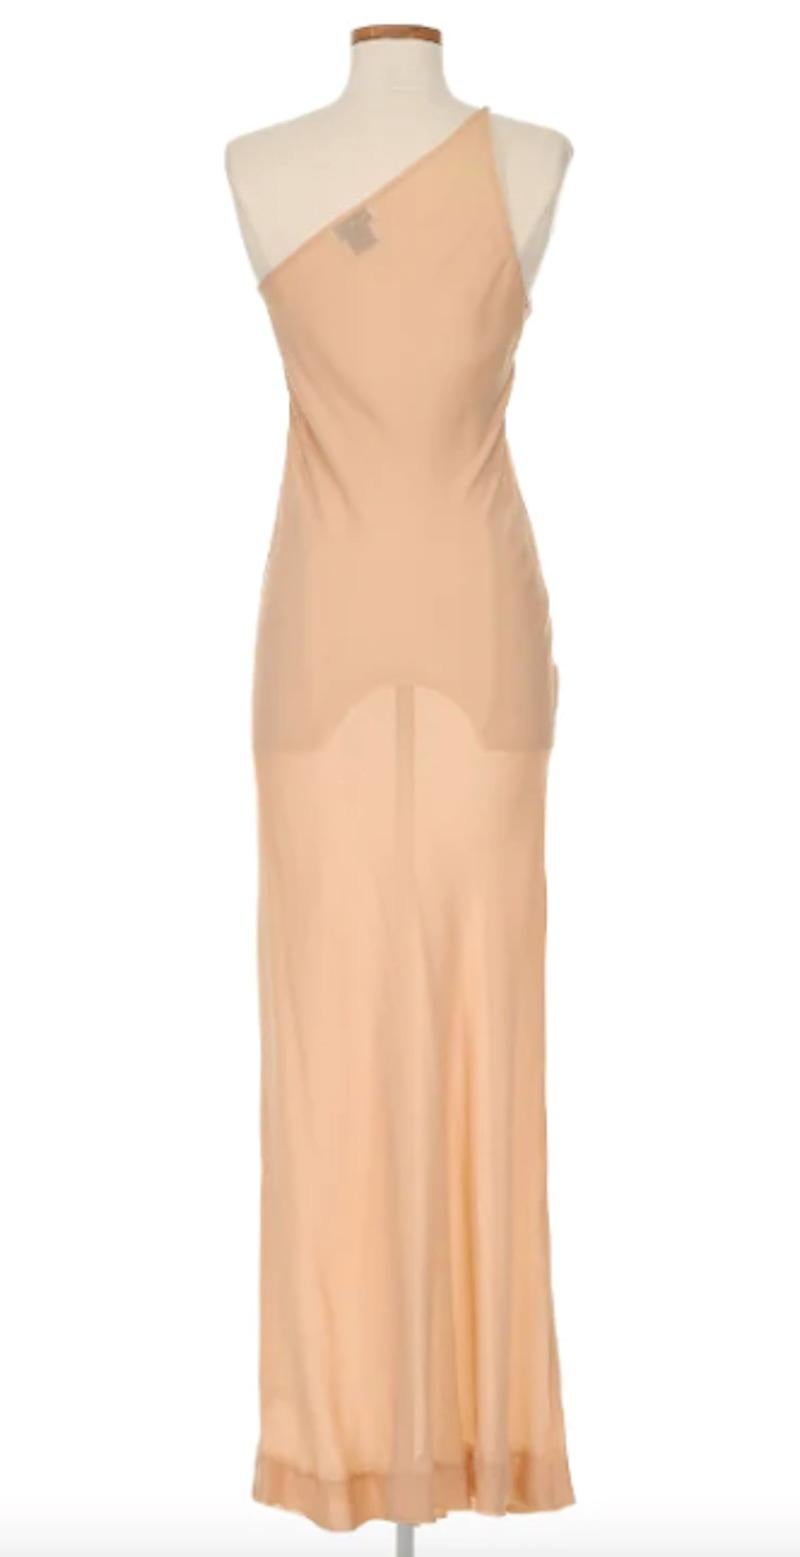 Halston 1970's Haute Couture Nude One Shoulder Kleid. Dieses Kleid strahlt zeitlose Eleganz aus - mit seiner durchsichtigen, nudefarbenen Silhouette und den Juwelenverzierungen am Dekolleté ist dieses Stück wirklich unvergesslich und ein